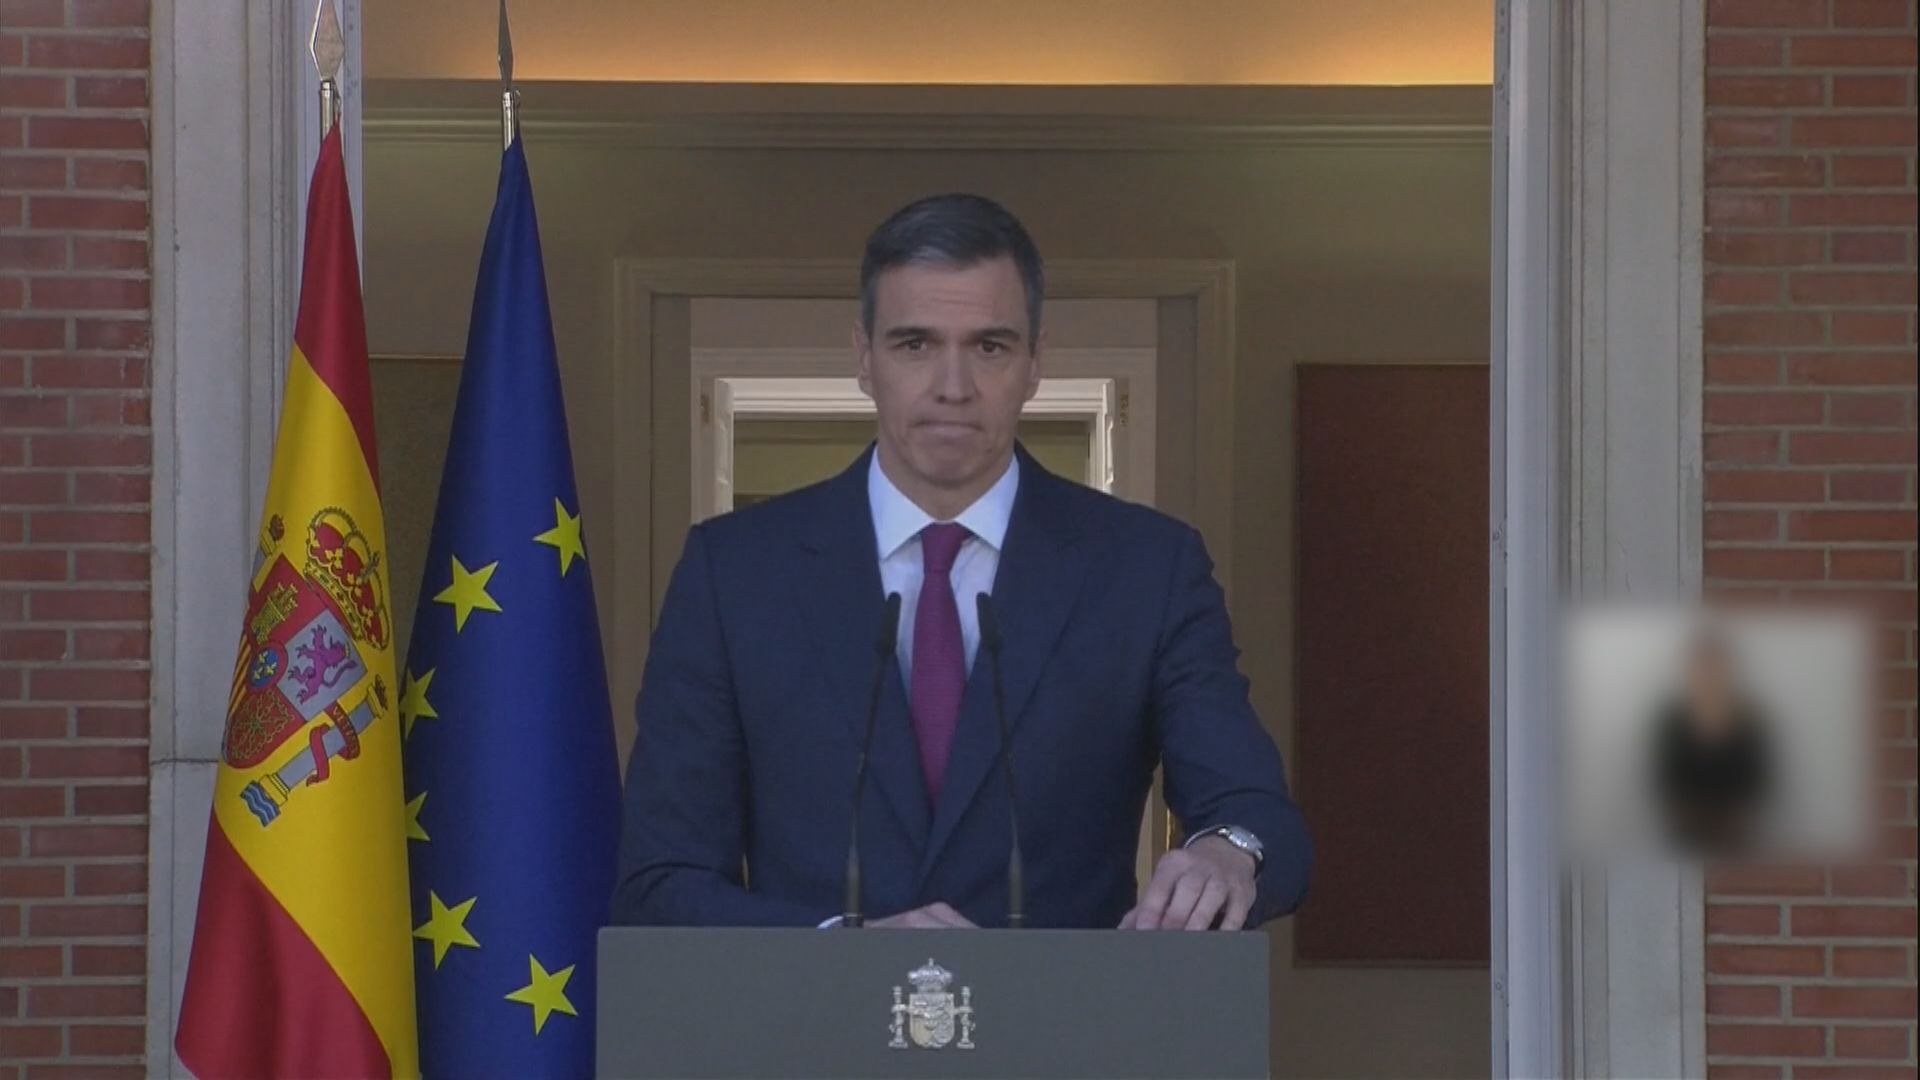 妻子涉貪受查 西班牙首相桑切斯宣布繼續留任